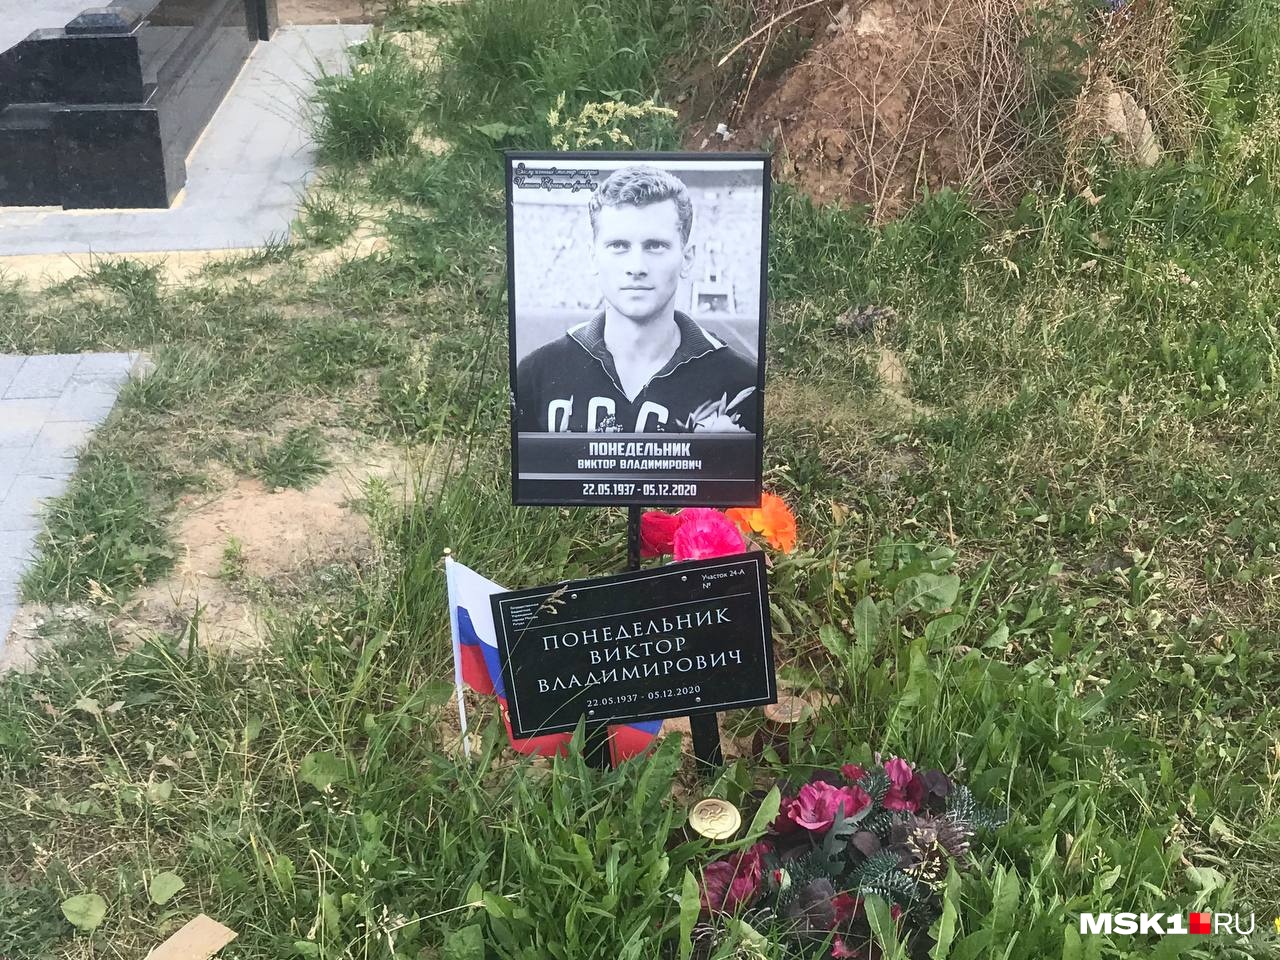 В этот день стало известно, что Шатунова похоронят по соседству со знаменитыми советскими футболистами. Виктор Понедельник — автор решающего гола в финале Евро-1960, который выиграла сборная СССР